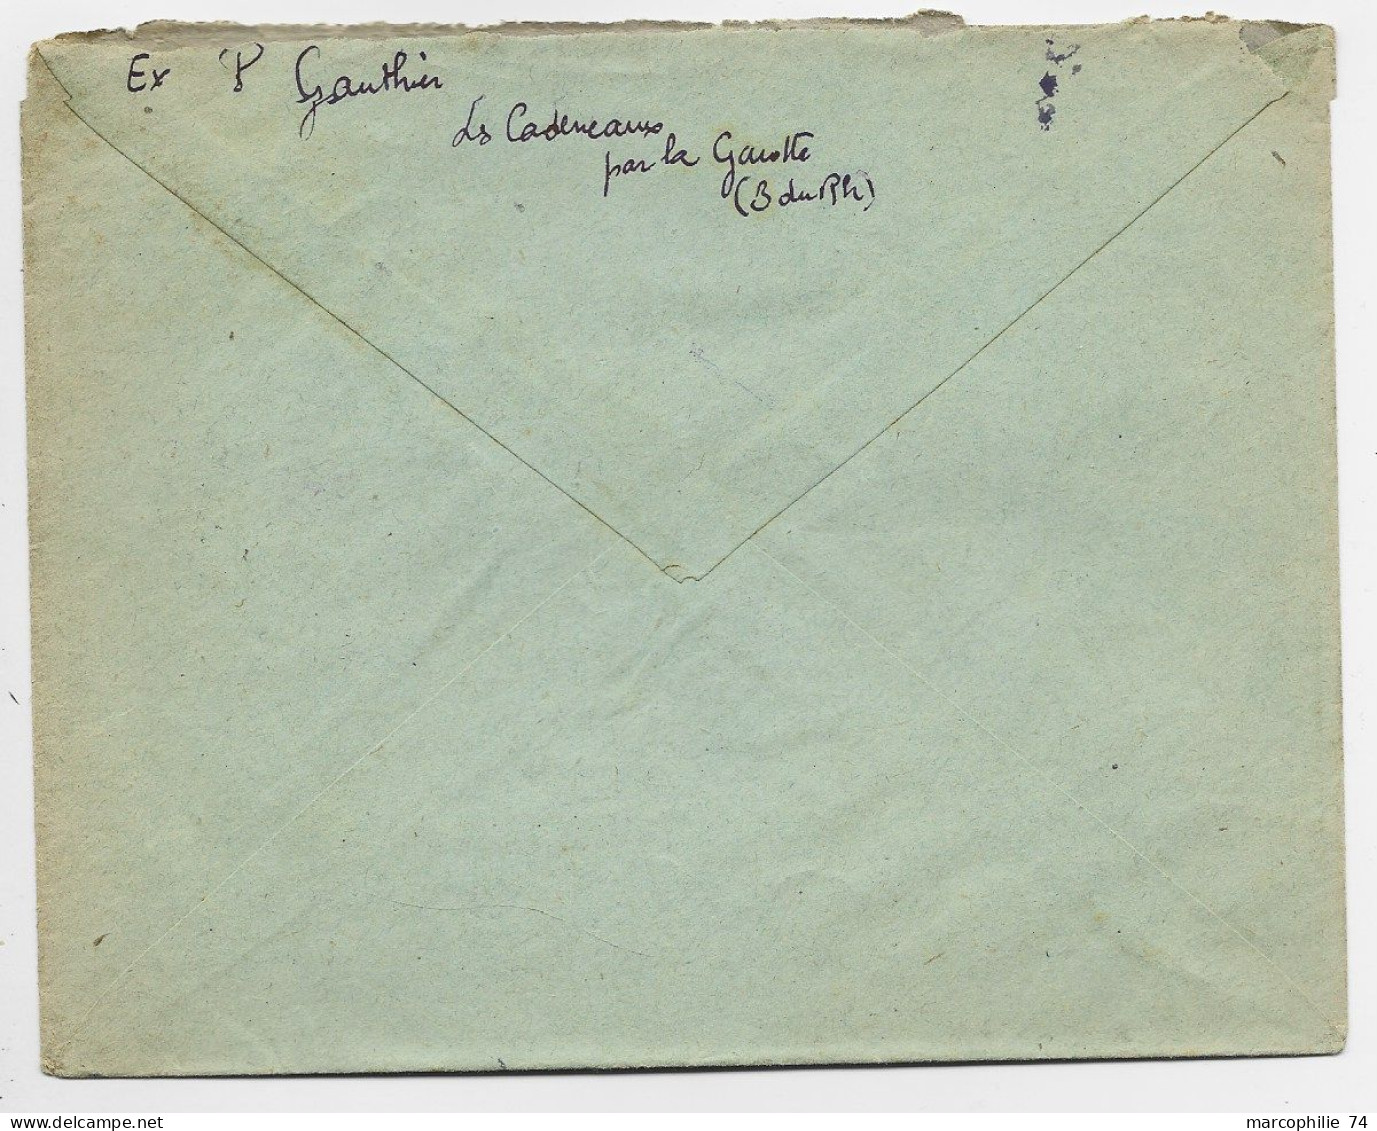 GANDON 5FR VERTX3 719 LETTRE REC PROVISOIRE C.PERLE LA GAVOTTE 5.4.1947 BCHES DU RHONE - 1945-54 Marianne Of Gandon